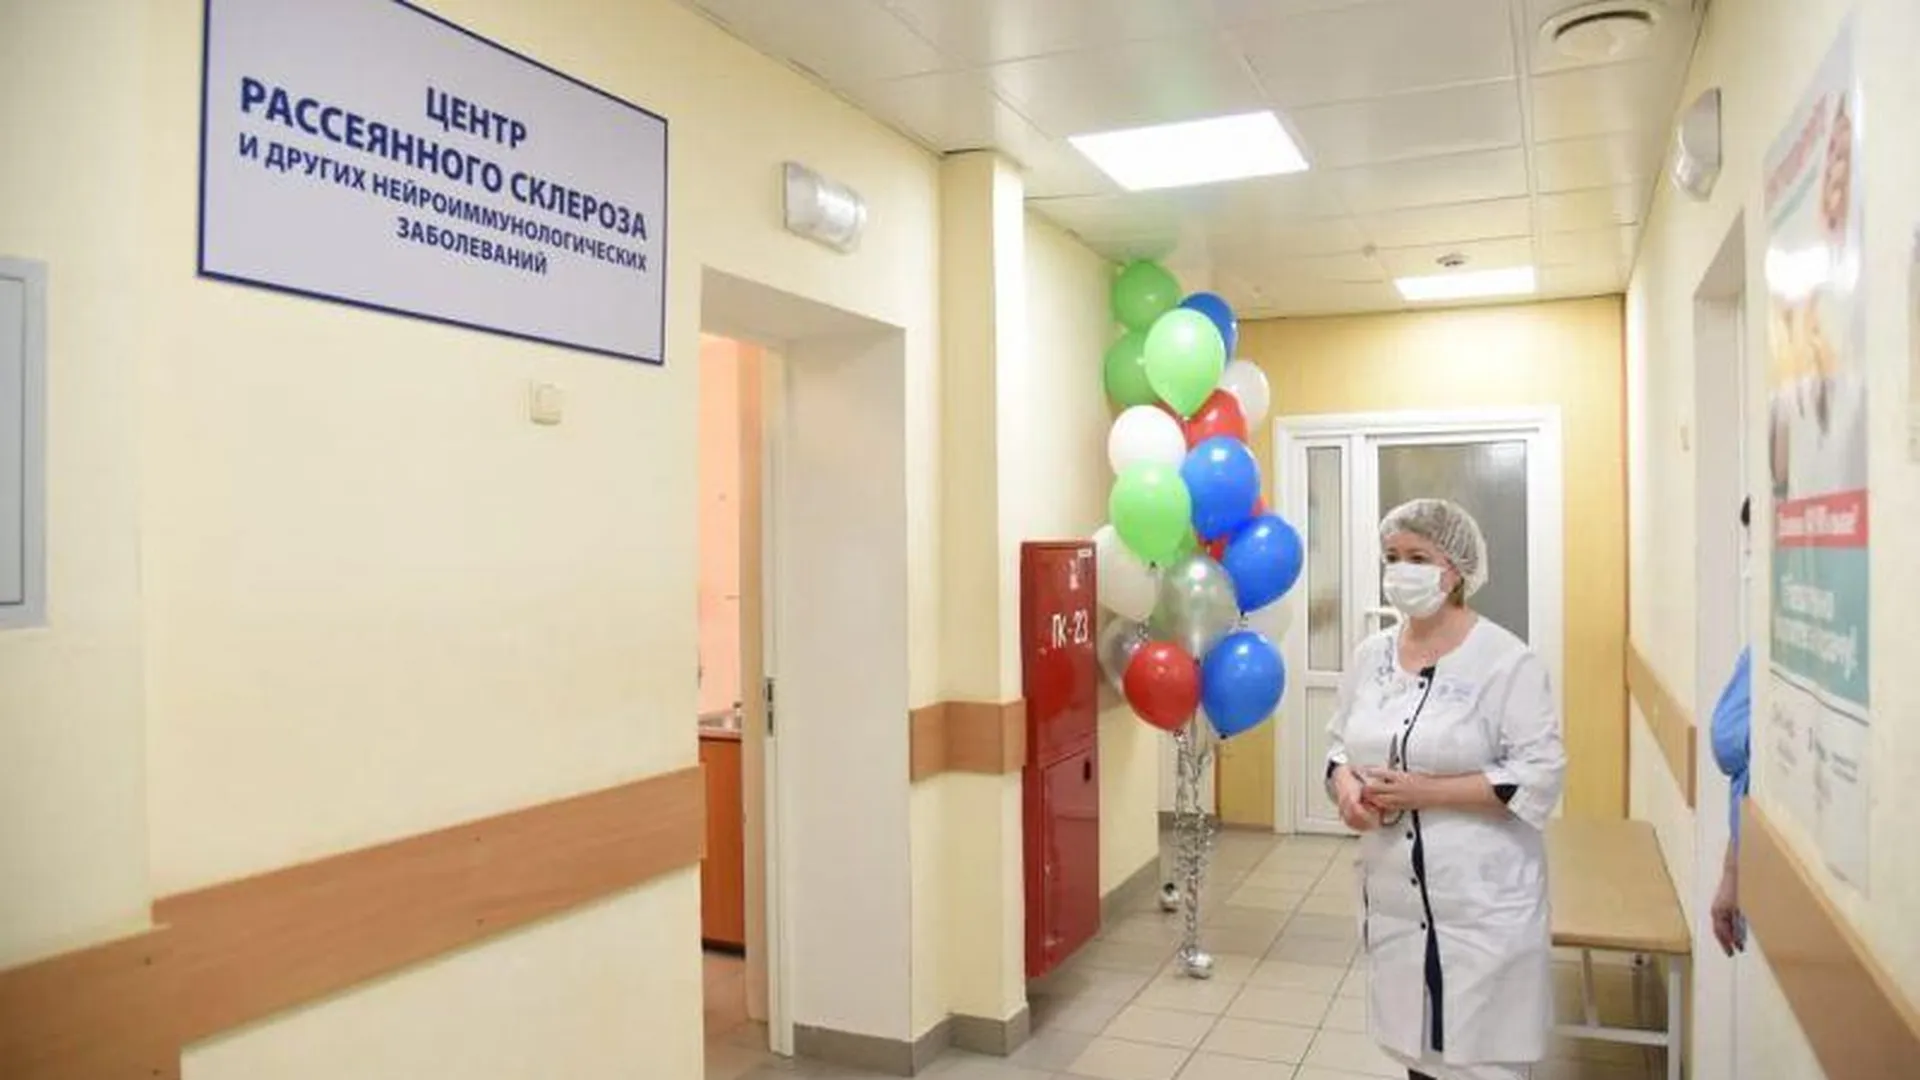 Пятый центр рассеянного склероза открылся в Подмосковье